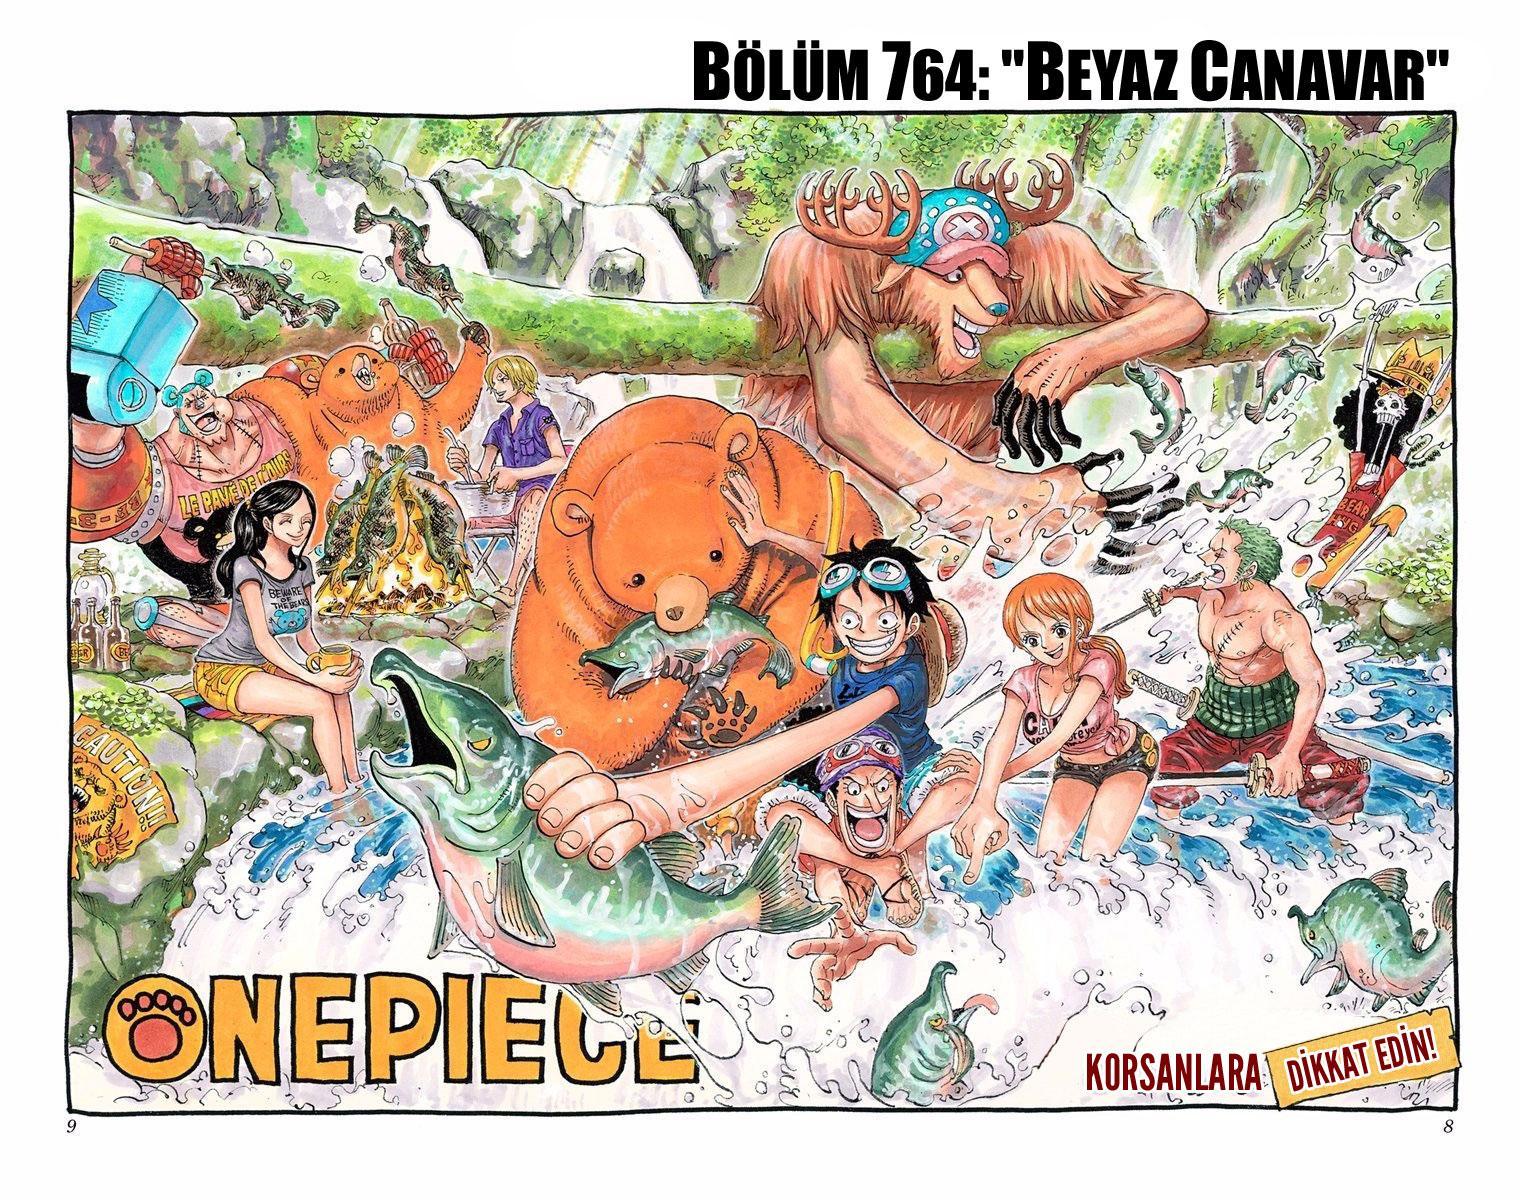 One Piece [Renkli] mangasının 764 bölümünün 2. sayfasını okuyorsunuz.